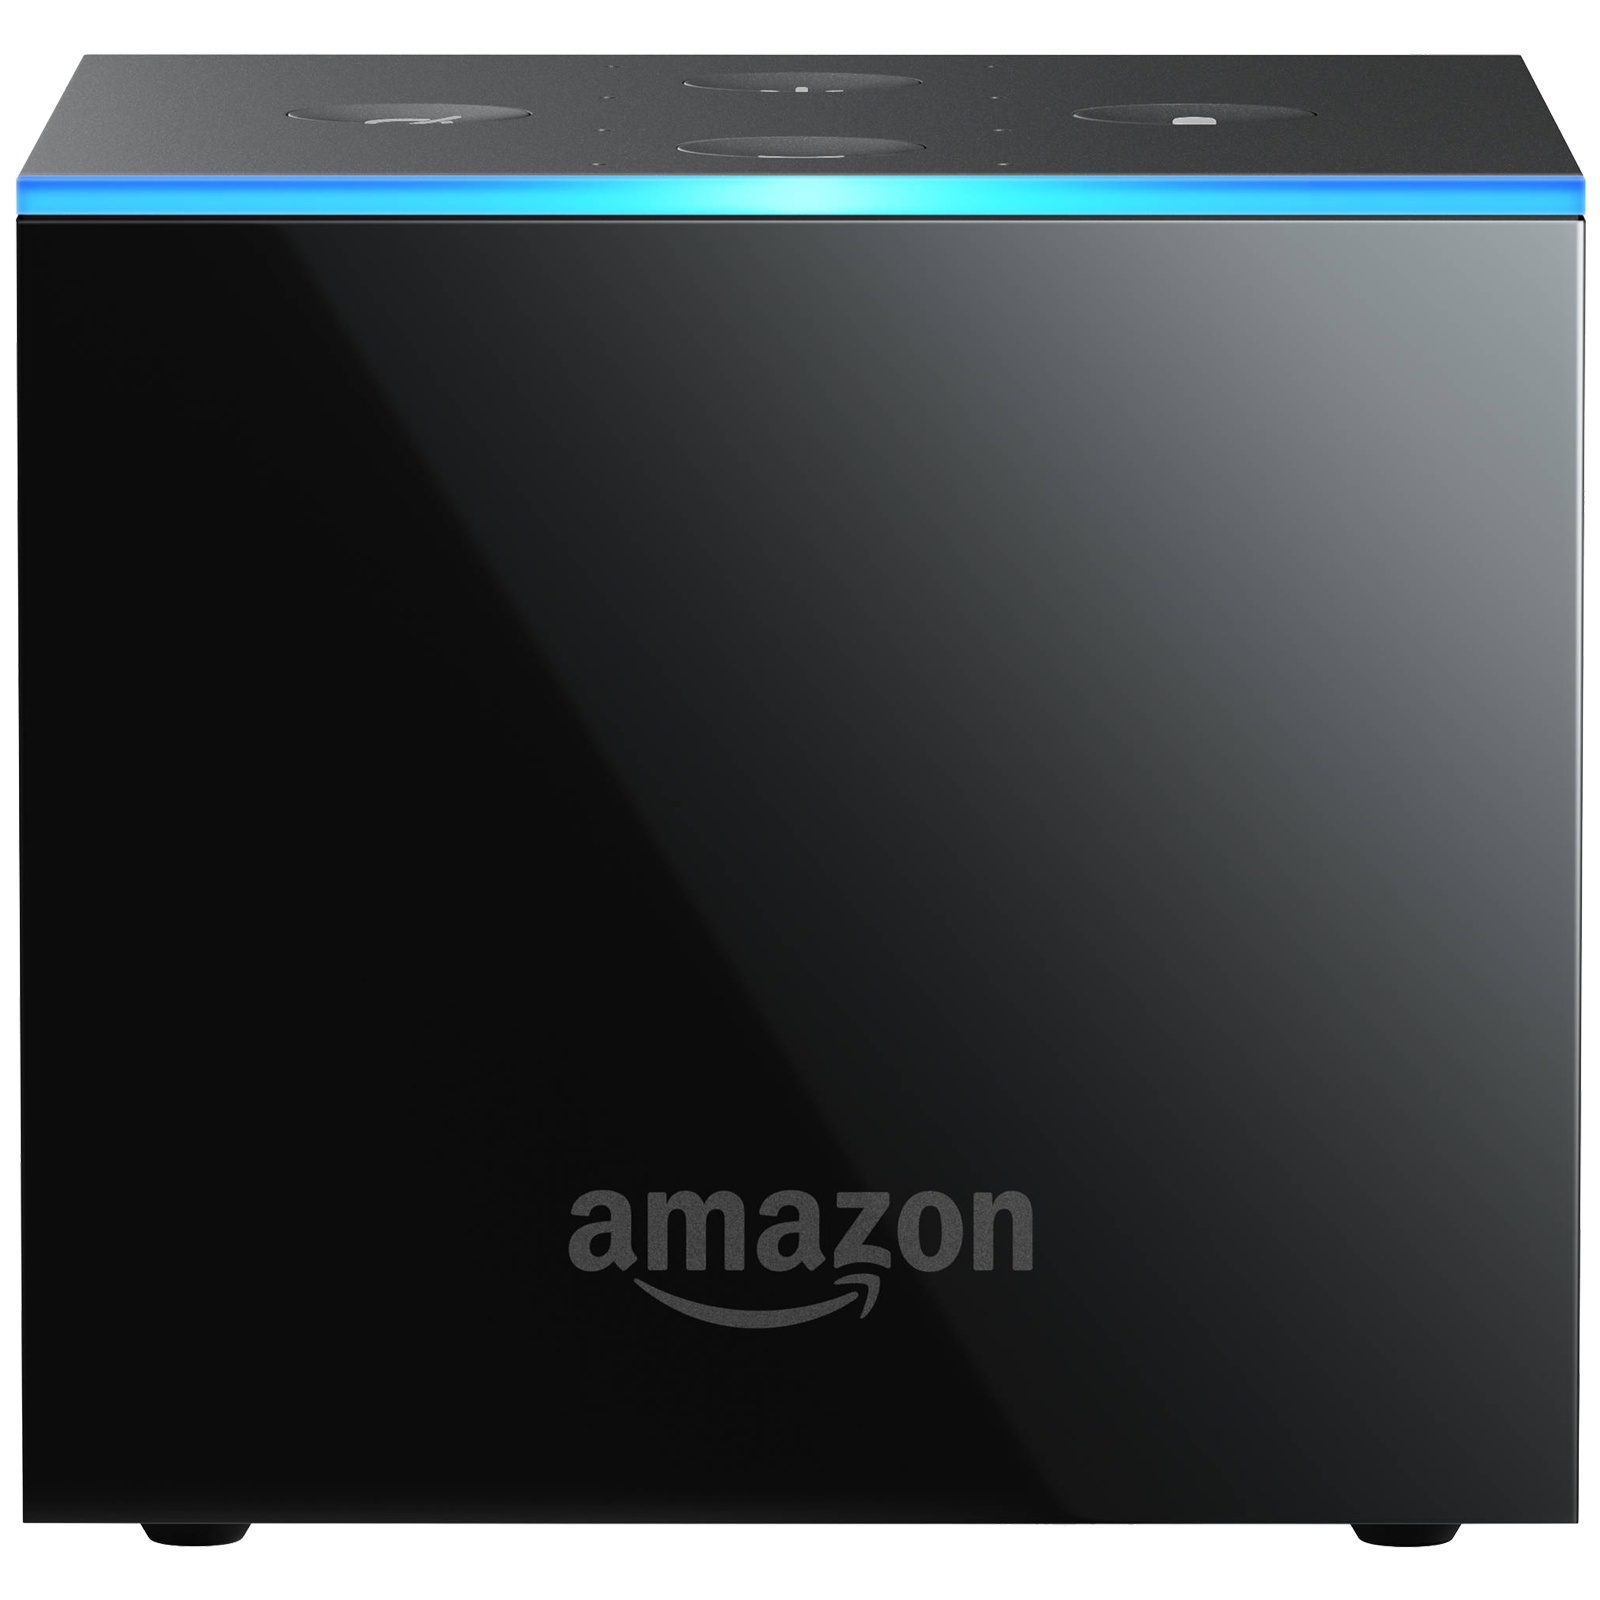 Amazon Fire TV Cube with Alexa Voice Remote (Hexa-Core Processor, B083VWSQJC, Black)_1